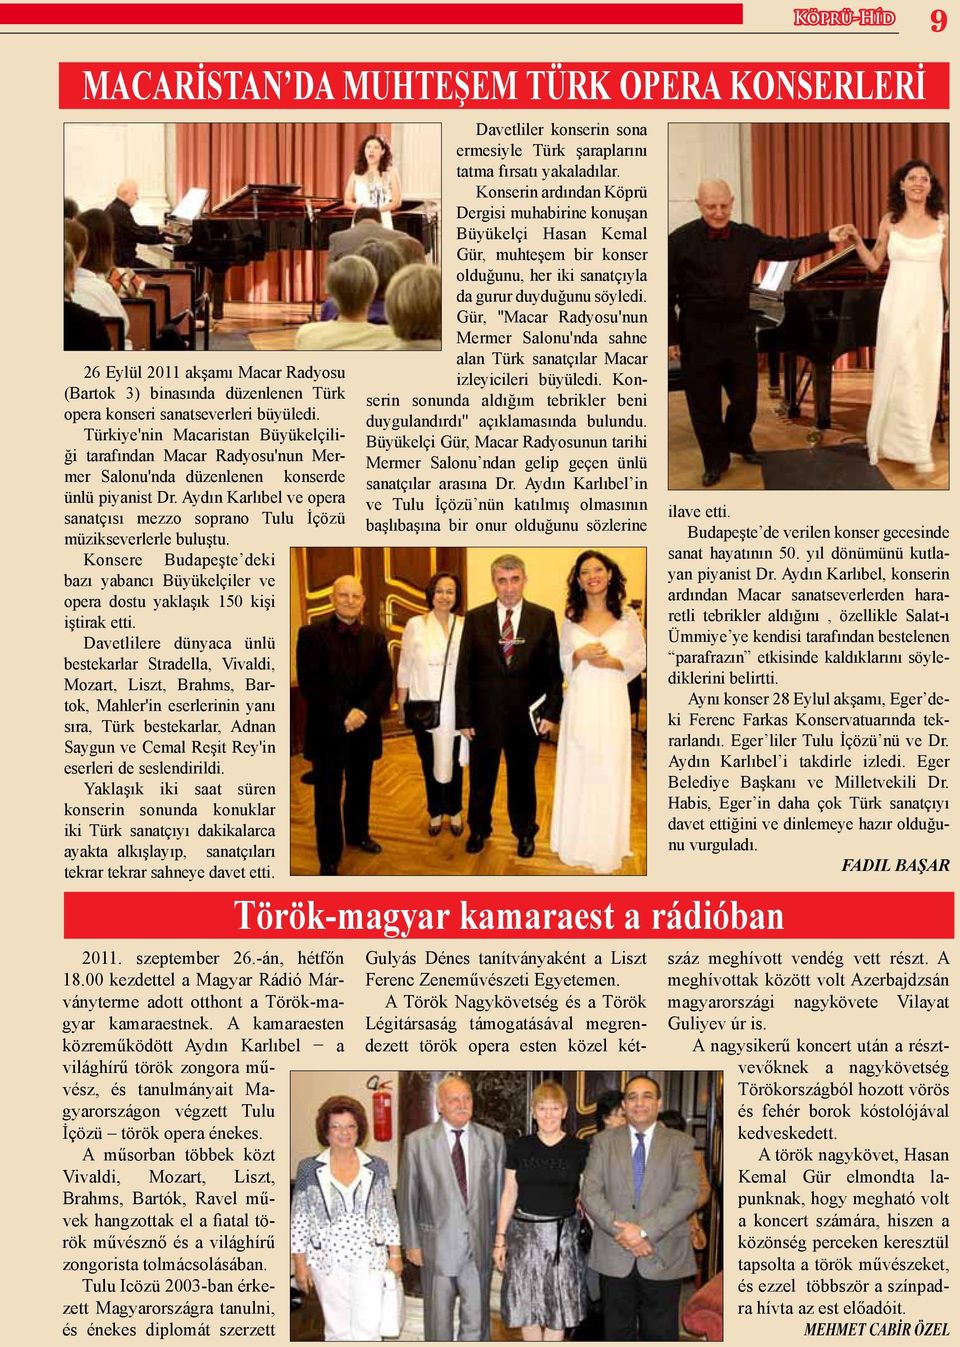 Aydın Karlıbel ve opera sanatçısı mezzo soprano Tulu İçözü müzikseverlerle buluştu. Konsere Budapeşte deki bazı yabancı Büyükelçiler ve opera dostu yaklaşık 150 kişi iştirak etti.